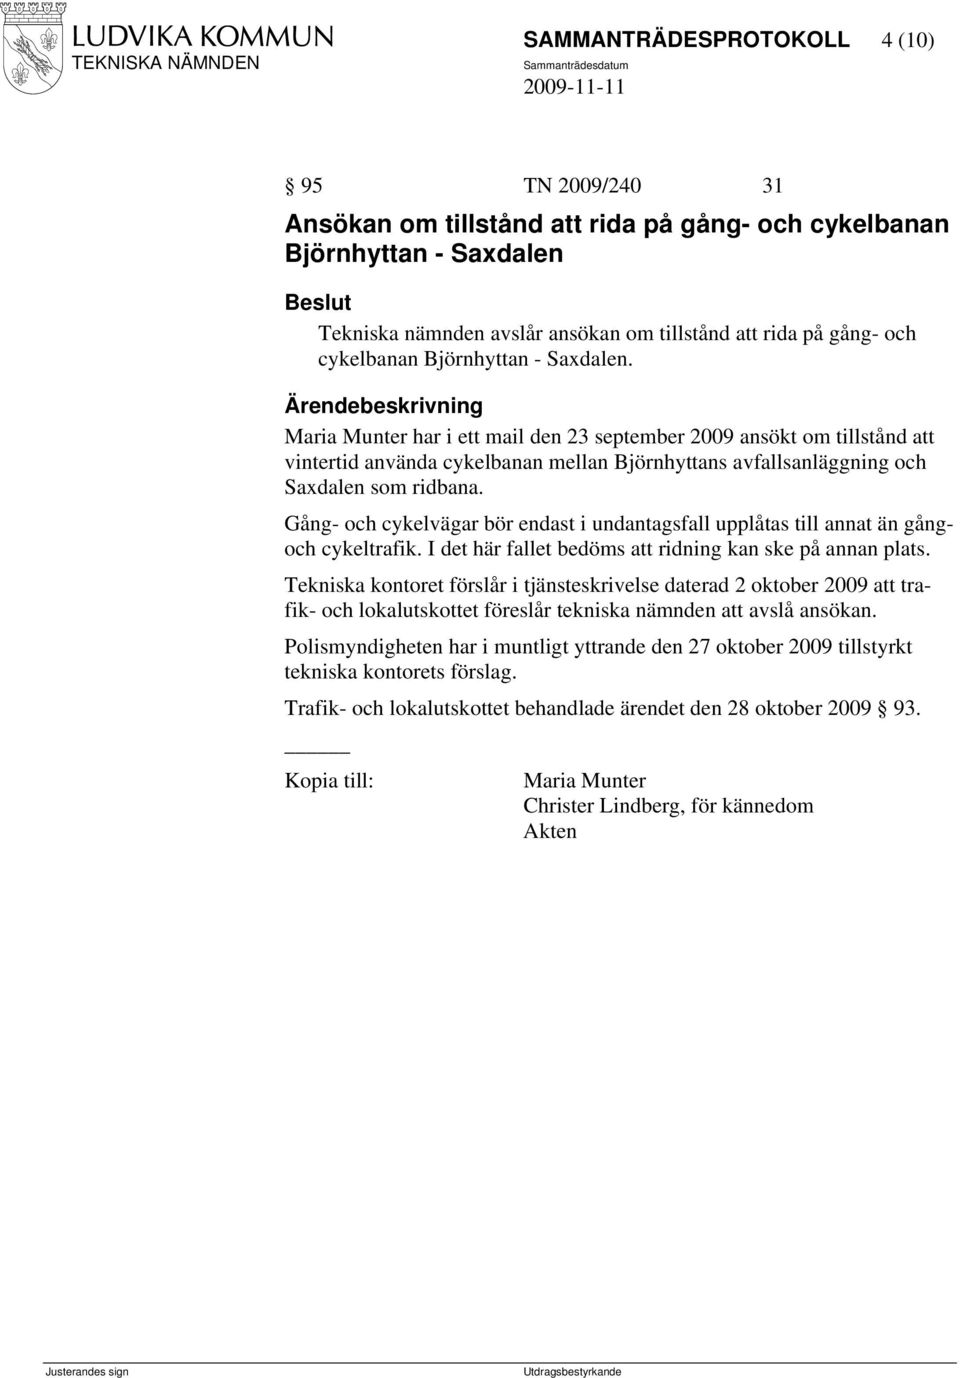 Maria Munter har i ett mail den 23 september 2009 ansökt om tillstånd att vintertid använda cykelbanan mellan Björnhyttans avfallsanläggning och Saxdalen som ridbana.